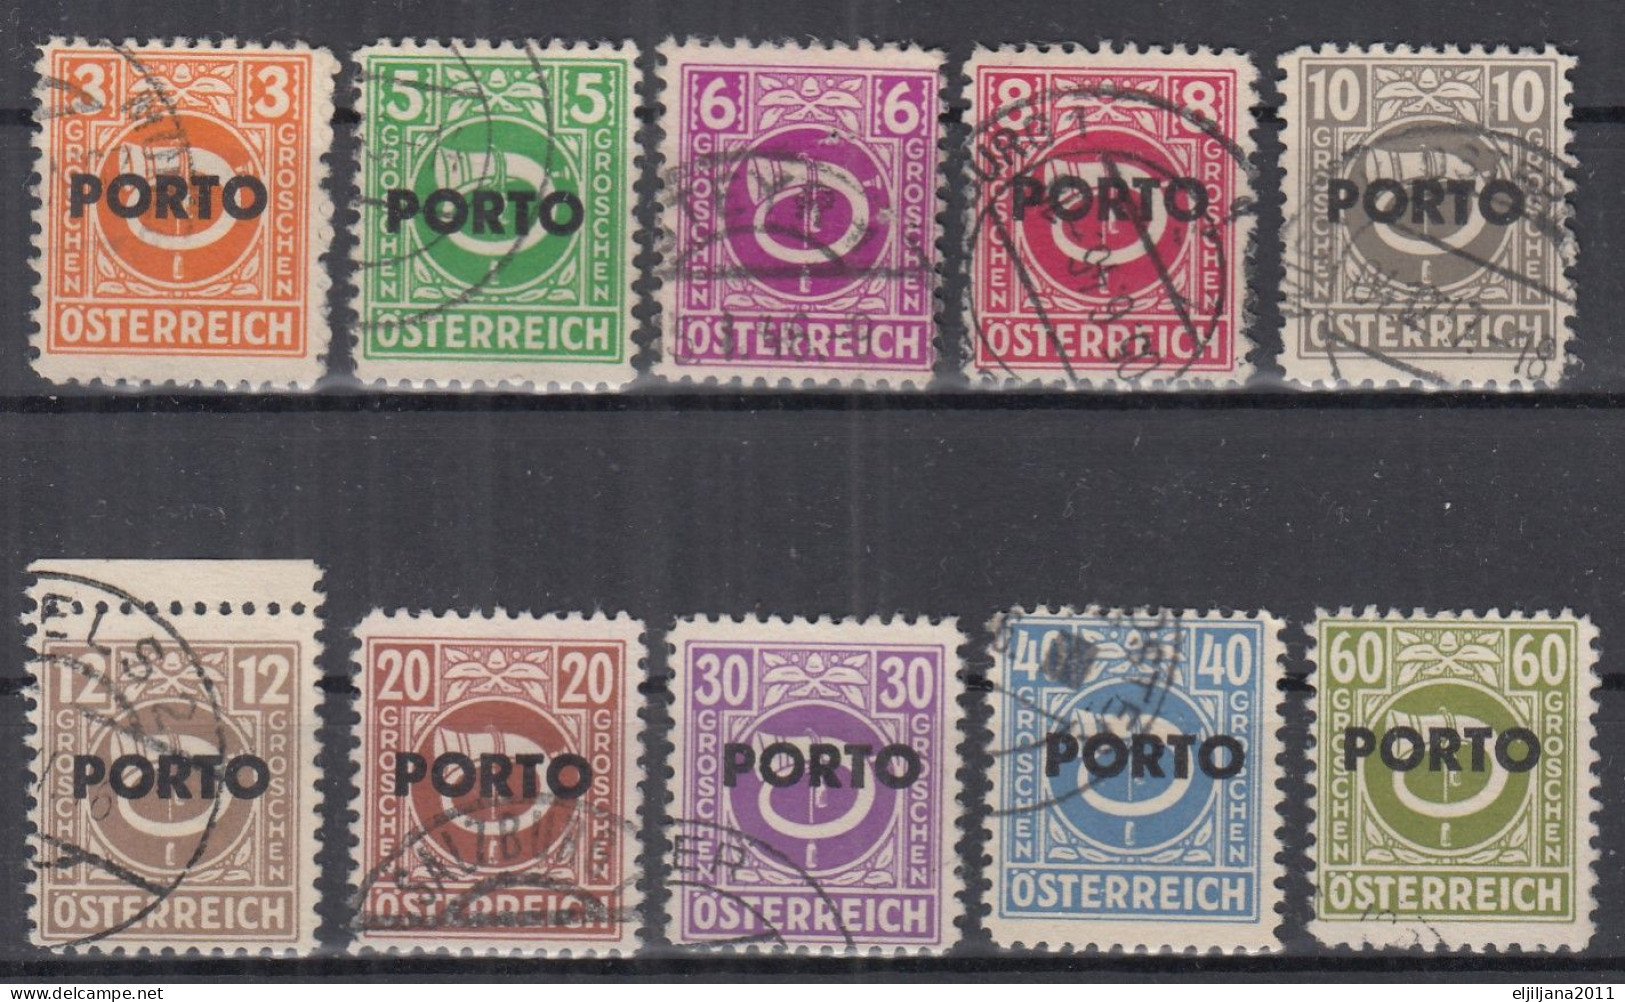 ⁕  Austria - Österreich 1946 ⁕ Postage Due - Overprint PORTO ⁕ 10v Used - Strafport